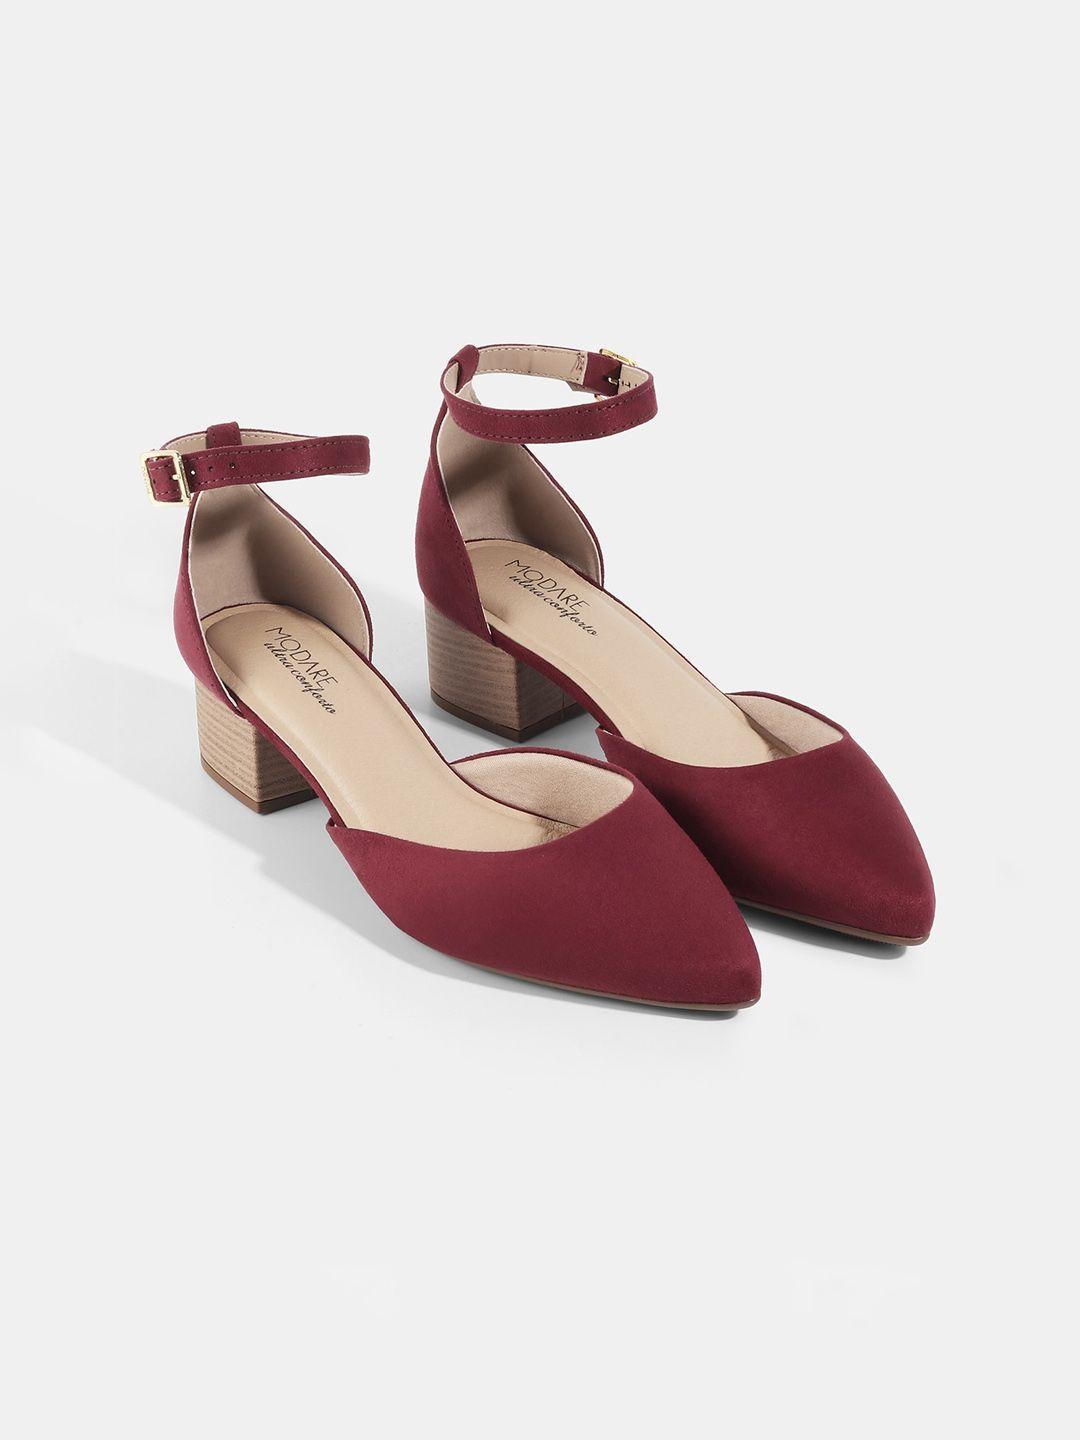 modare red suede block pumps heels